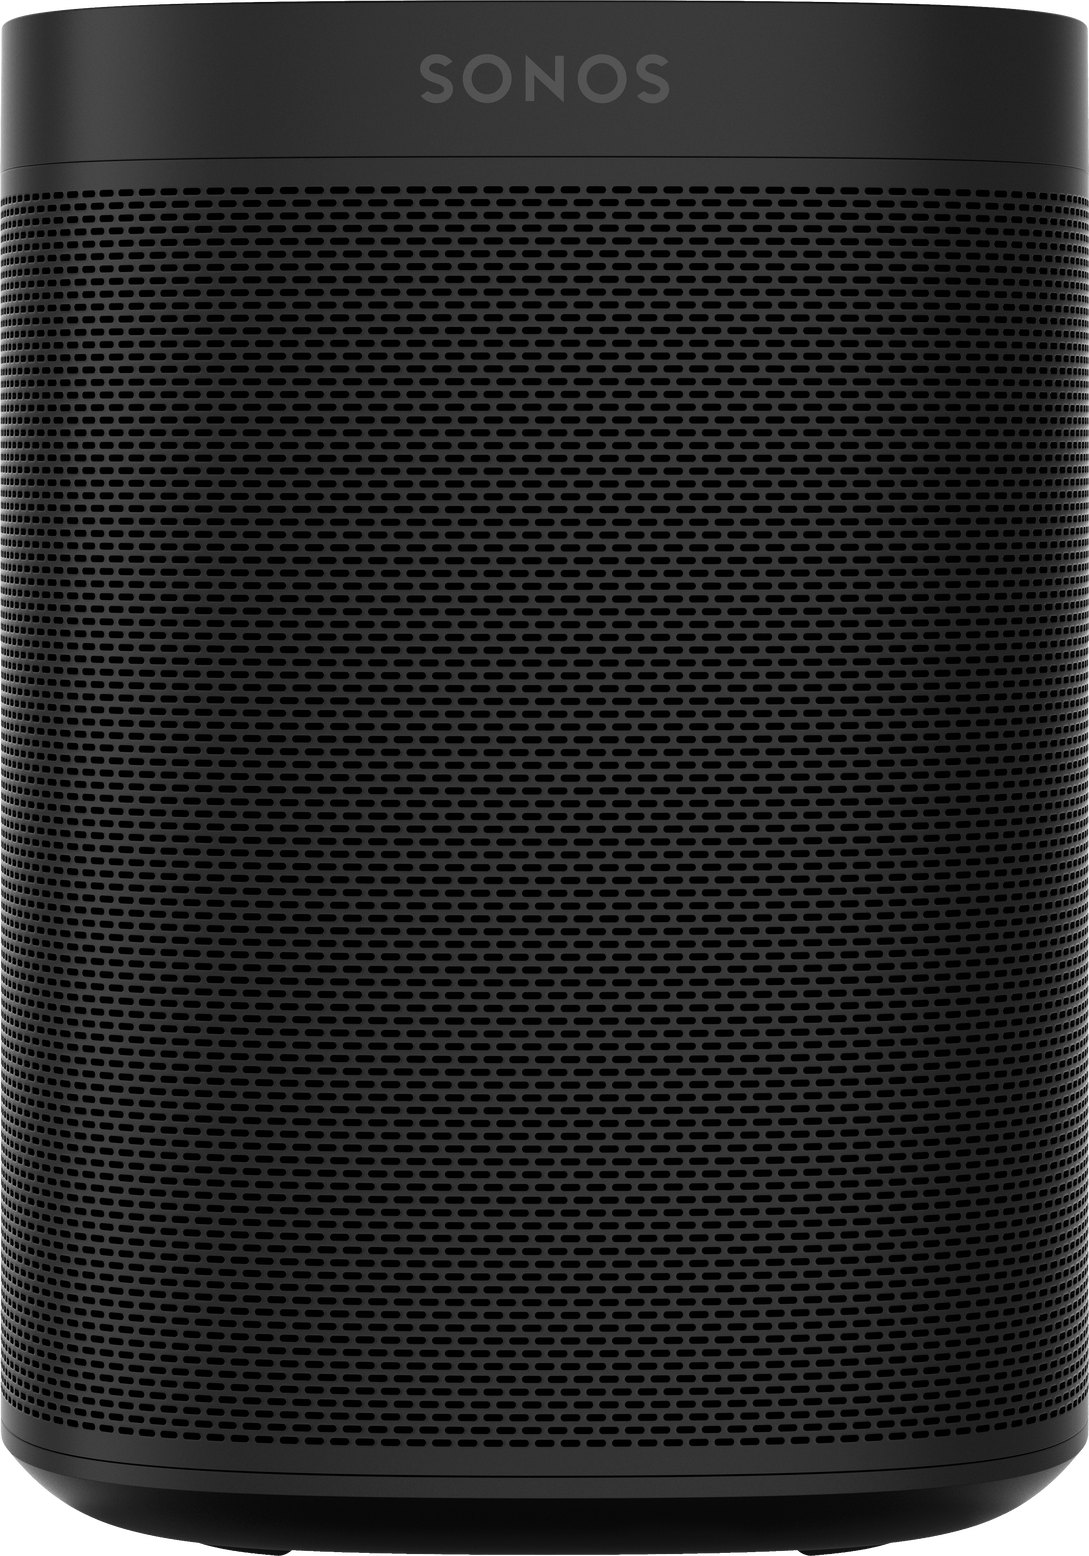 Sonos One speaker in black